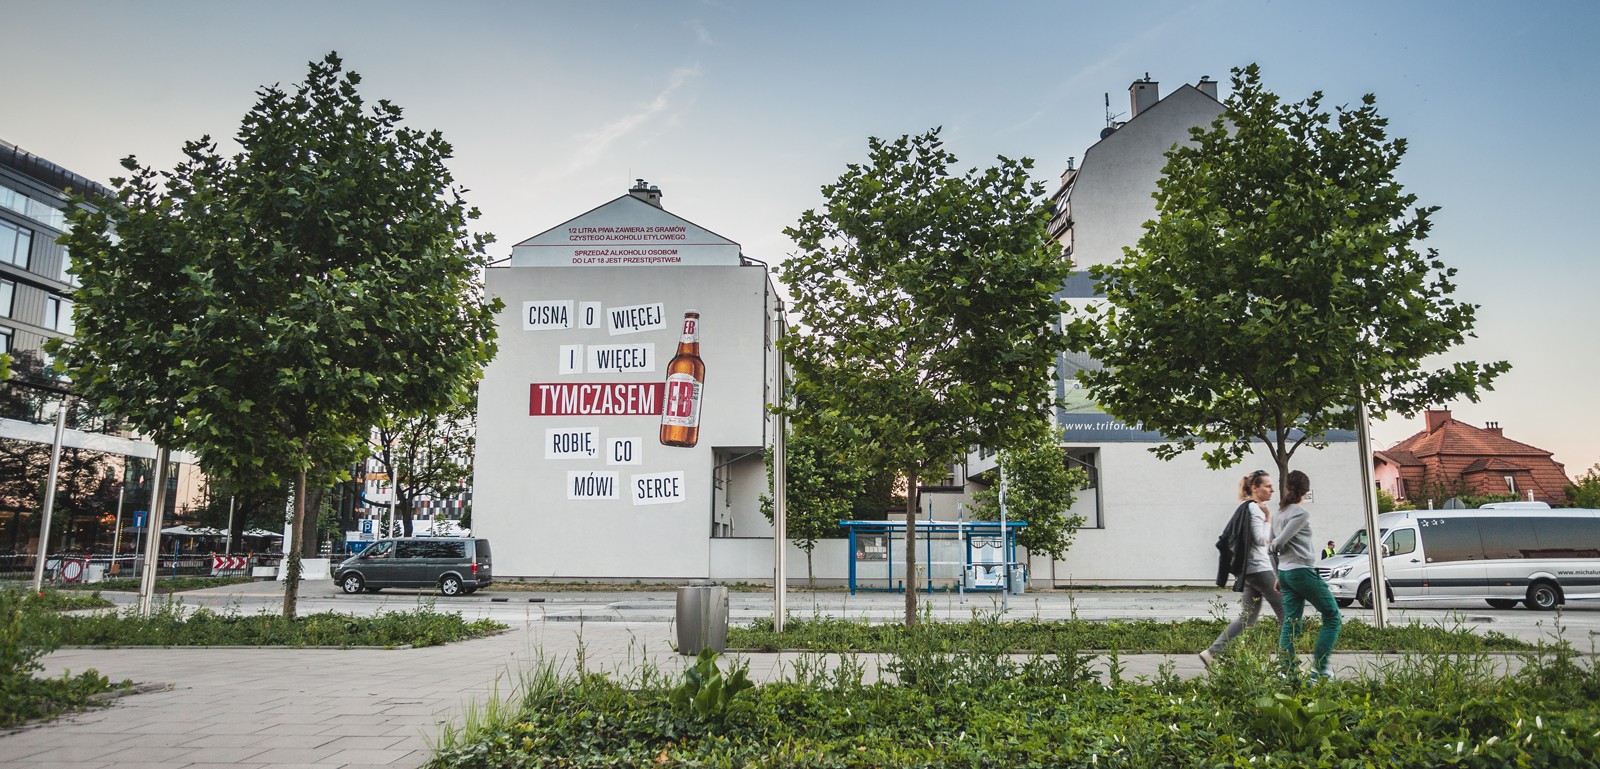 Mural reklamowy dla kampanii EB w Krakowie przy ul. Barskiej 61a | Tymczasem EB | Portfolio